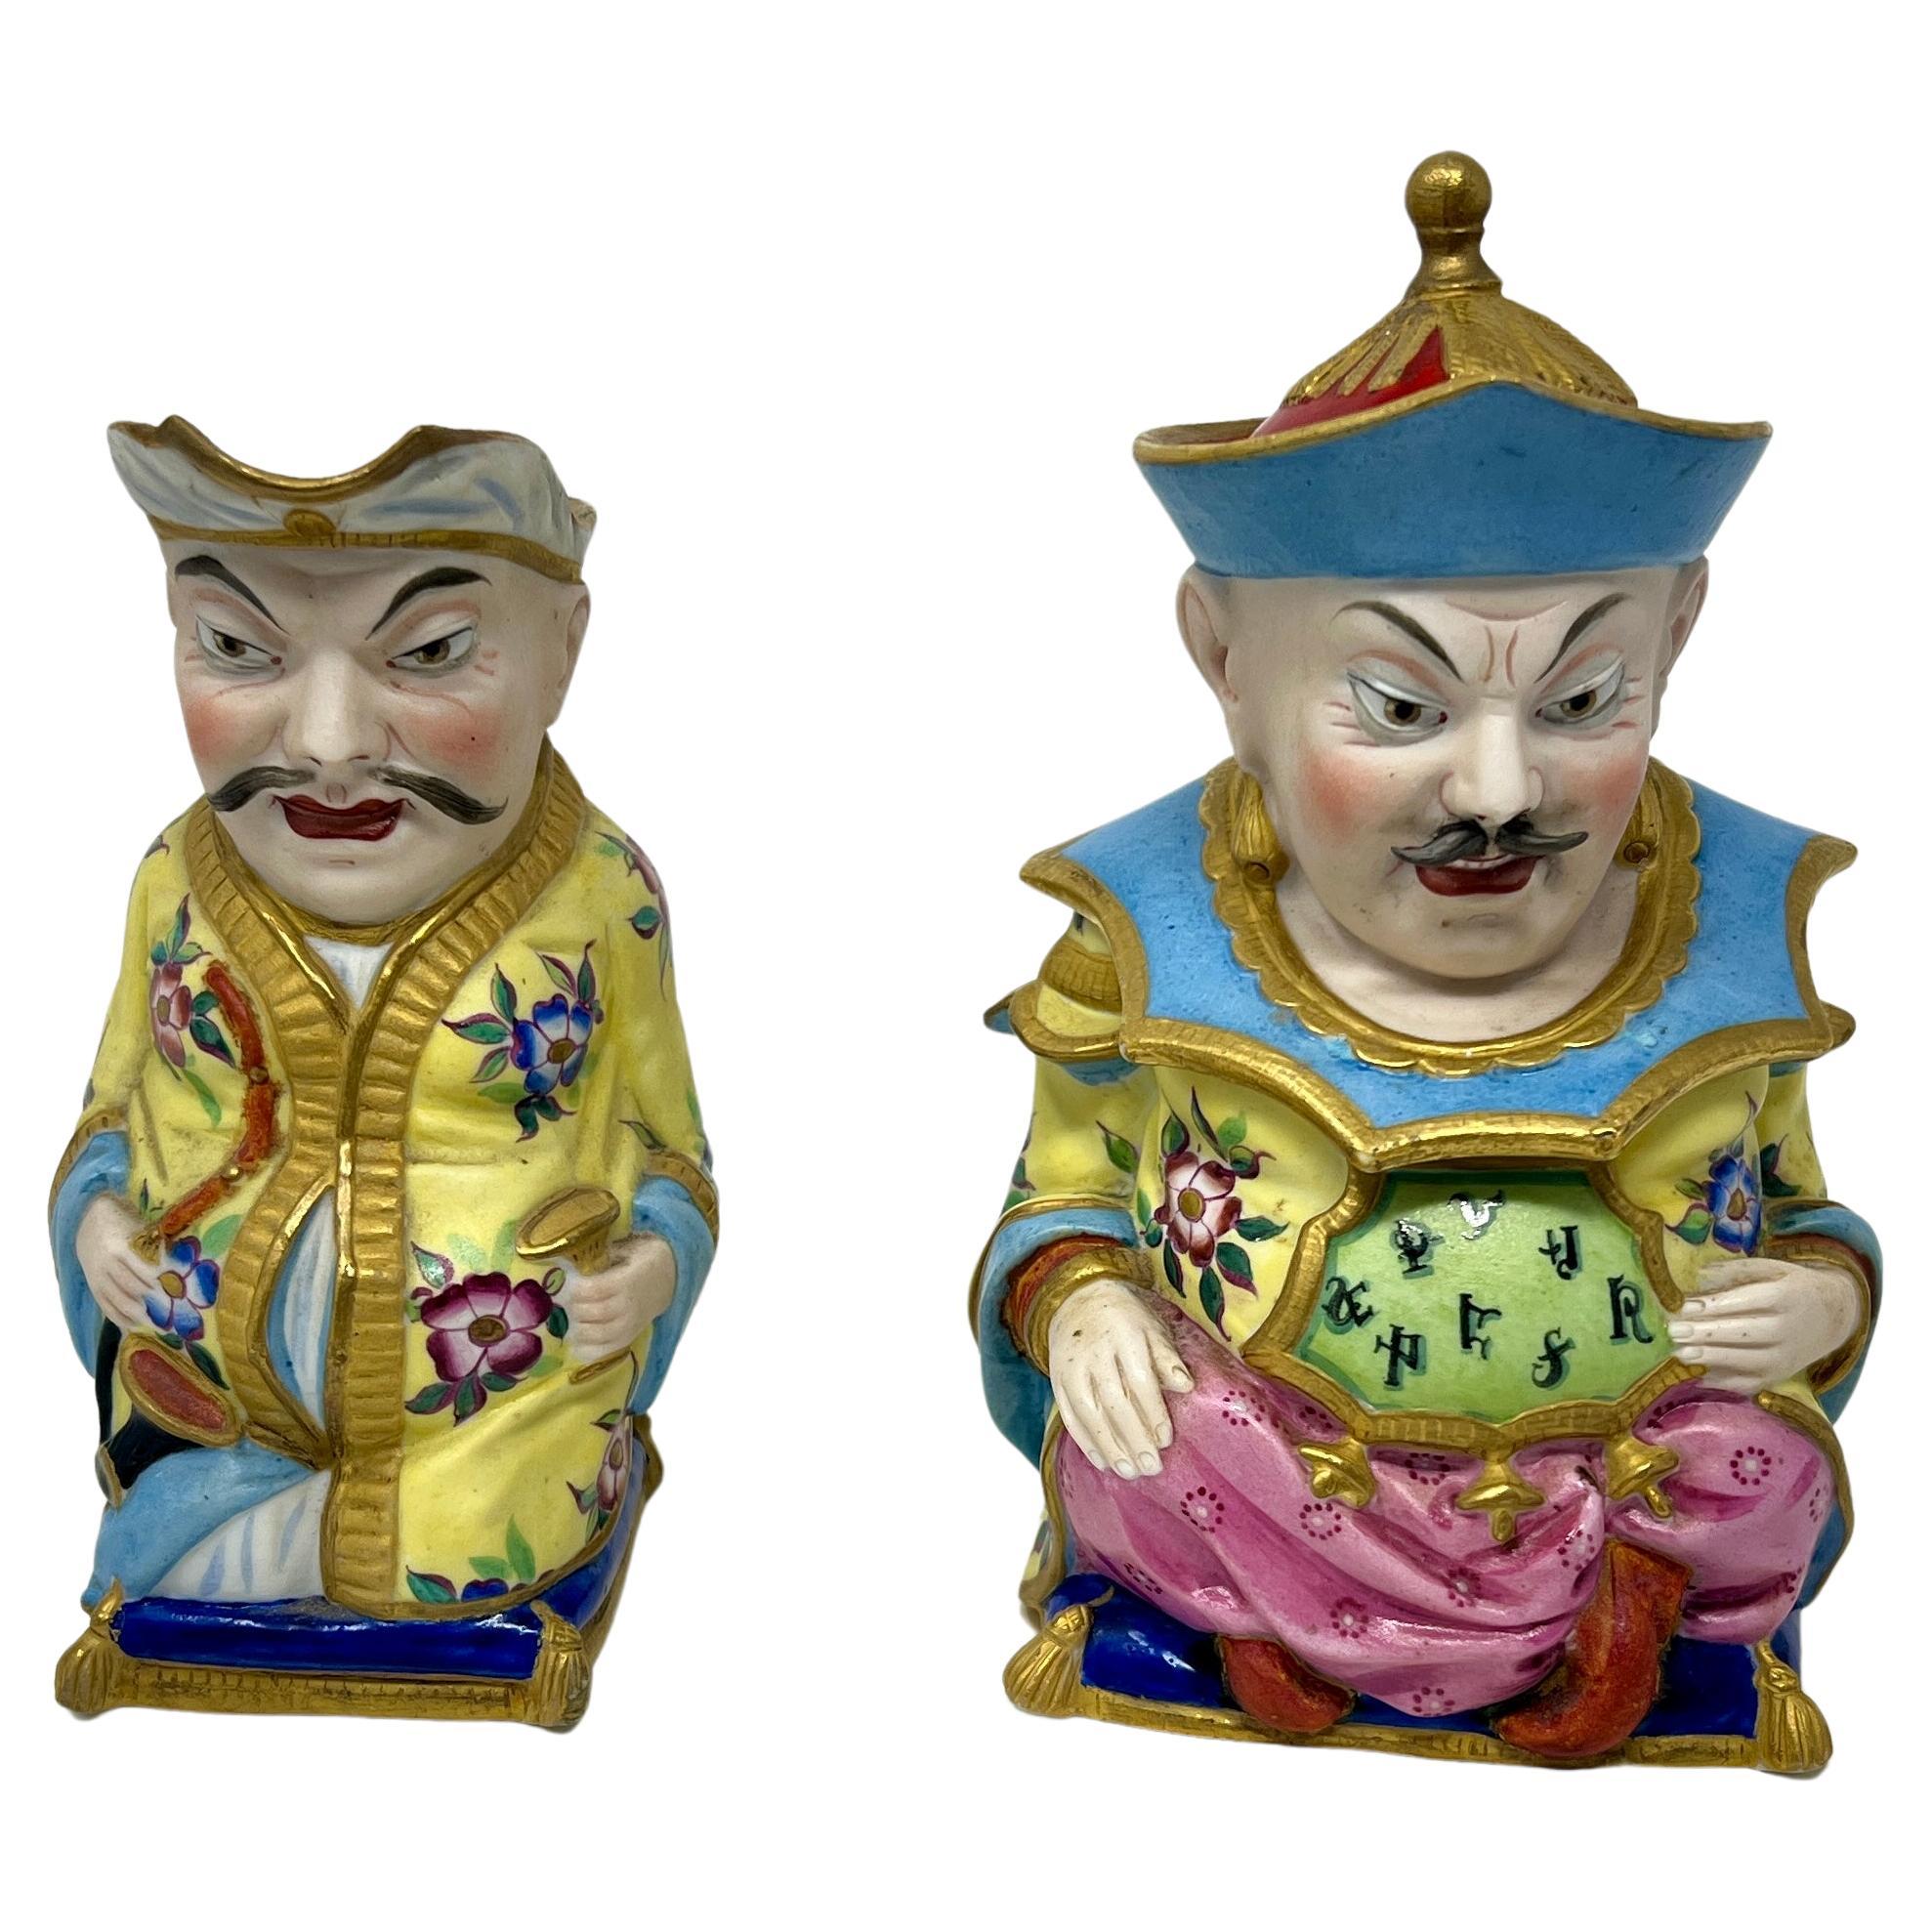 Paire de figurines anciennes en porcelaine du Vieux Paris peintes à la main : Crémier et Sucre, Circa 1880.
Sucre
	H = 6.5
	W = 4.5 
	D = 3.5
Crème
	H = 5.5
	W = 4.25
	D = 3.25

